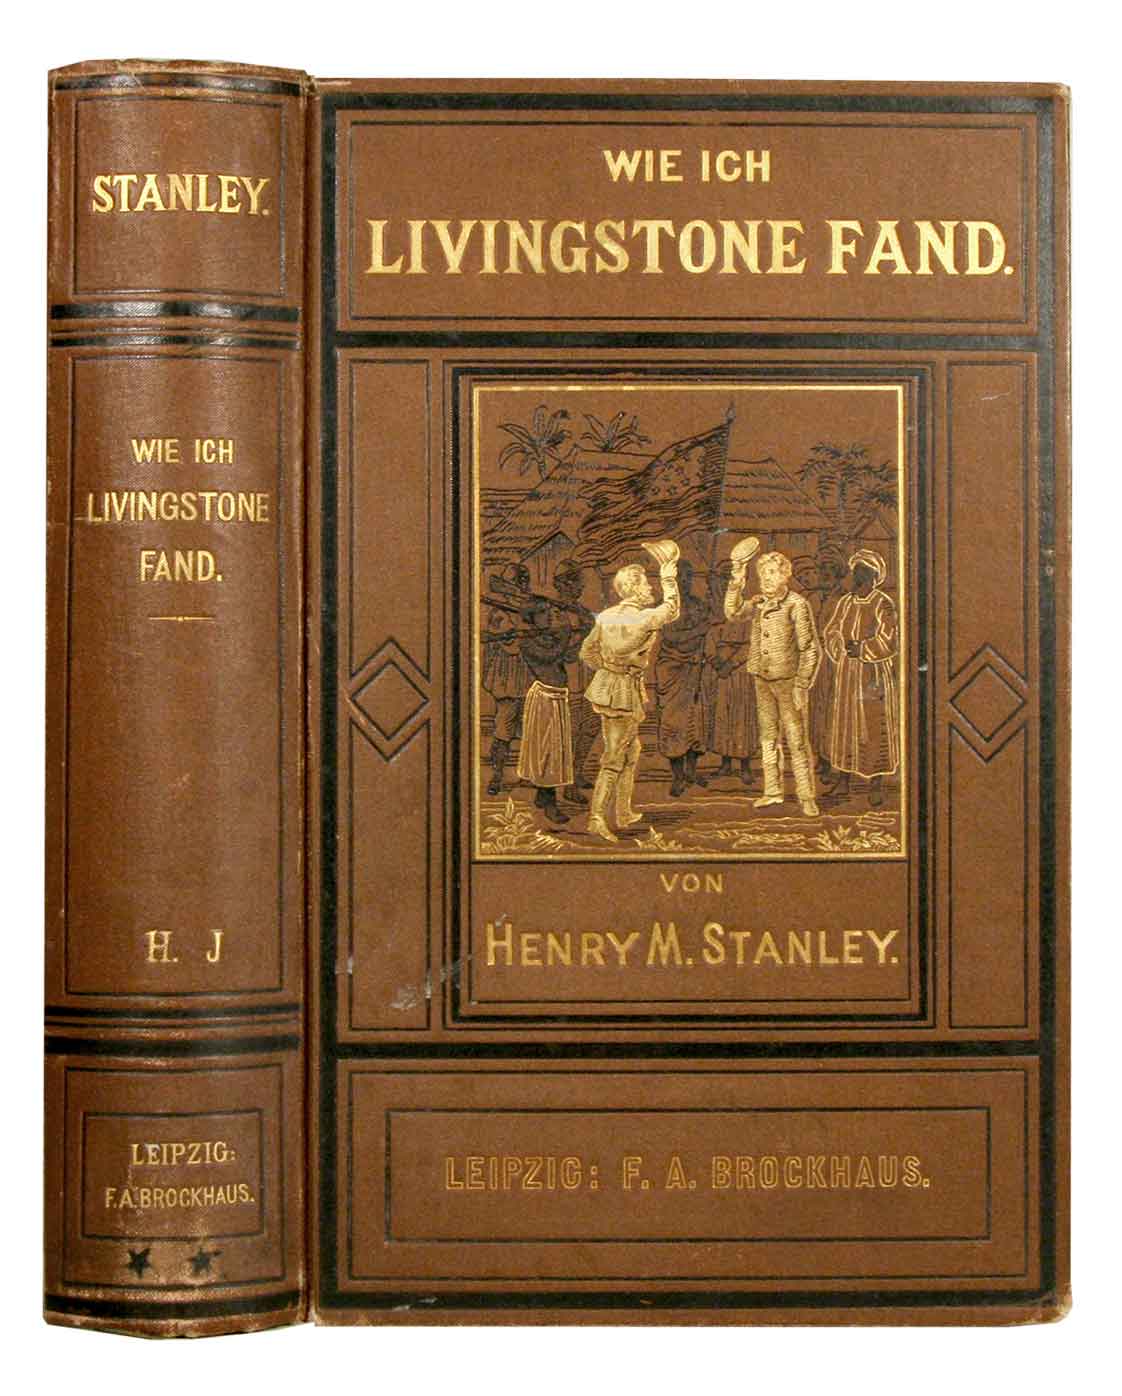 STANLEY, Henry M.: - Wie ich Livingstone fand. Reisen, Abenteuer und Entdeckungen in Central-Afrika. Autorisierte deutsche Ausgabe. 2 Bnde in 1 Band gebunden.